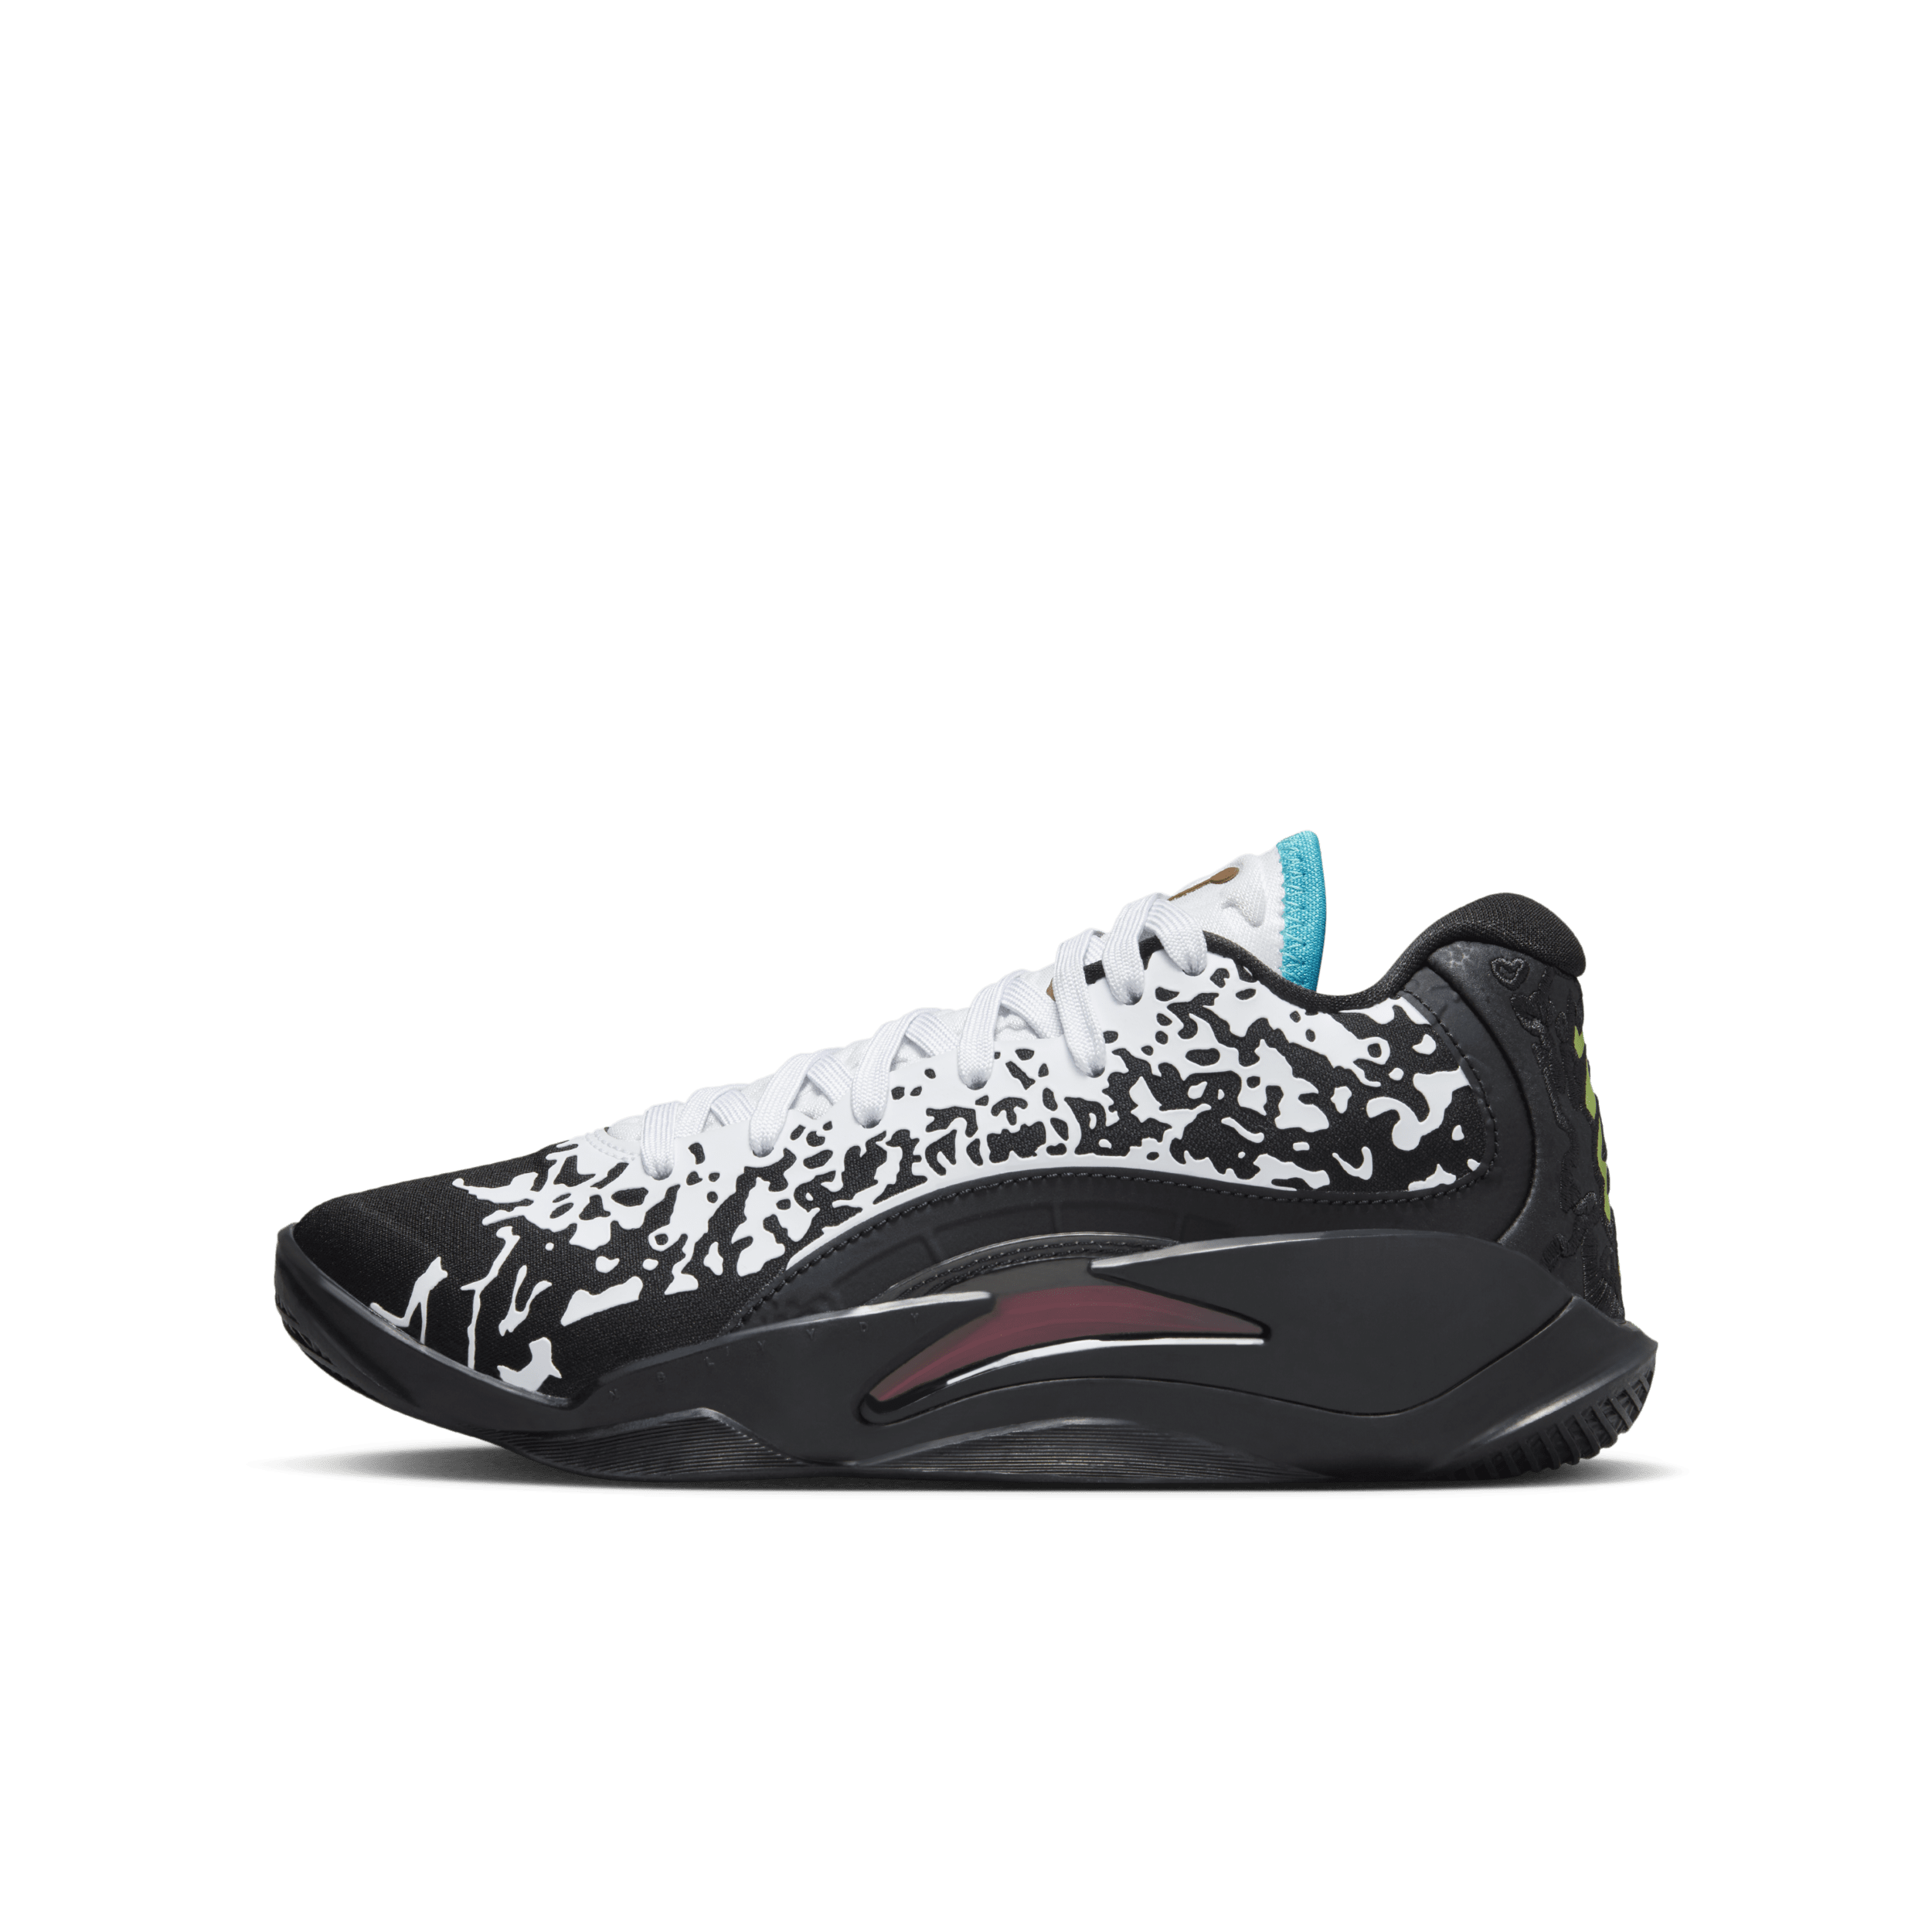 Nike Zion 3 basketbalschoenen voor kids - Zwart